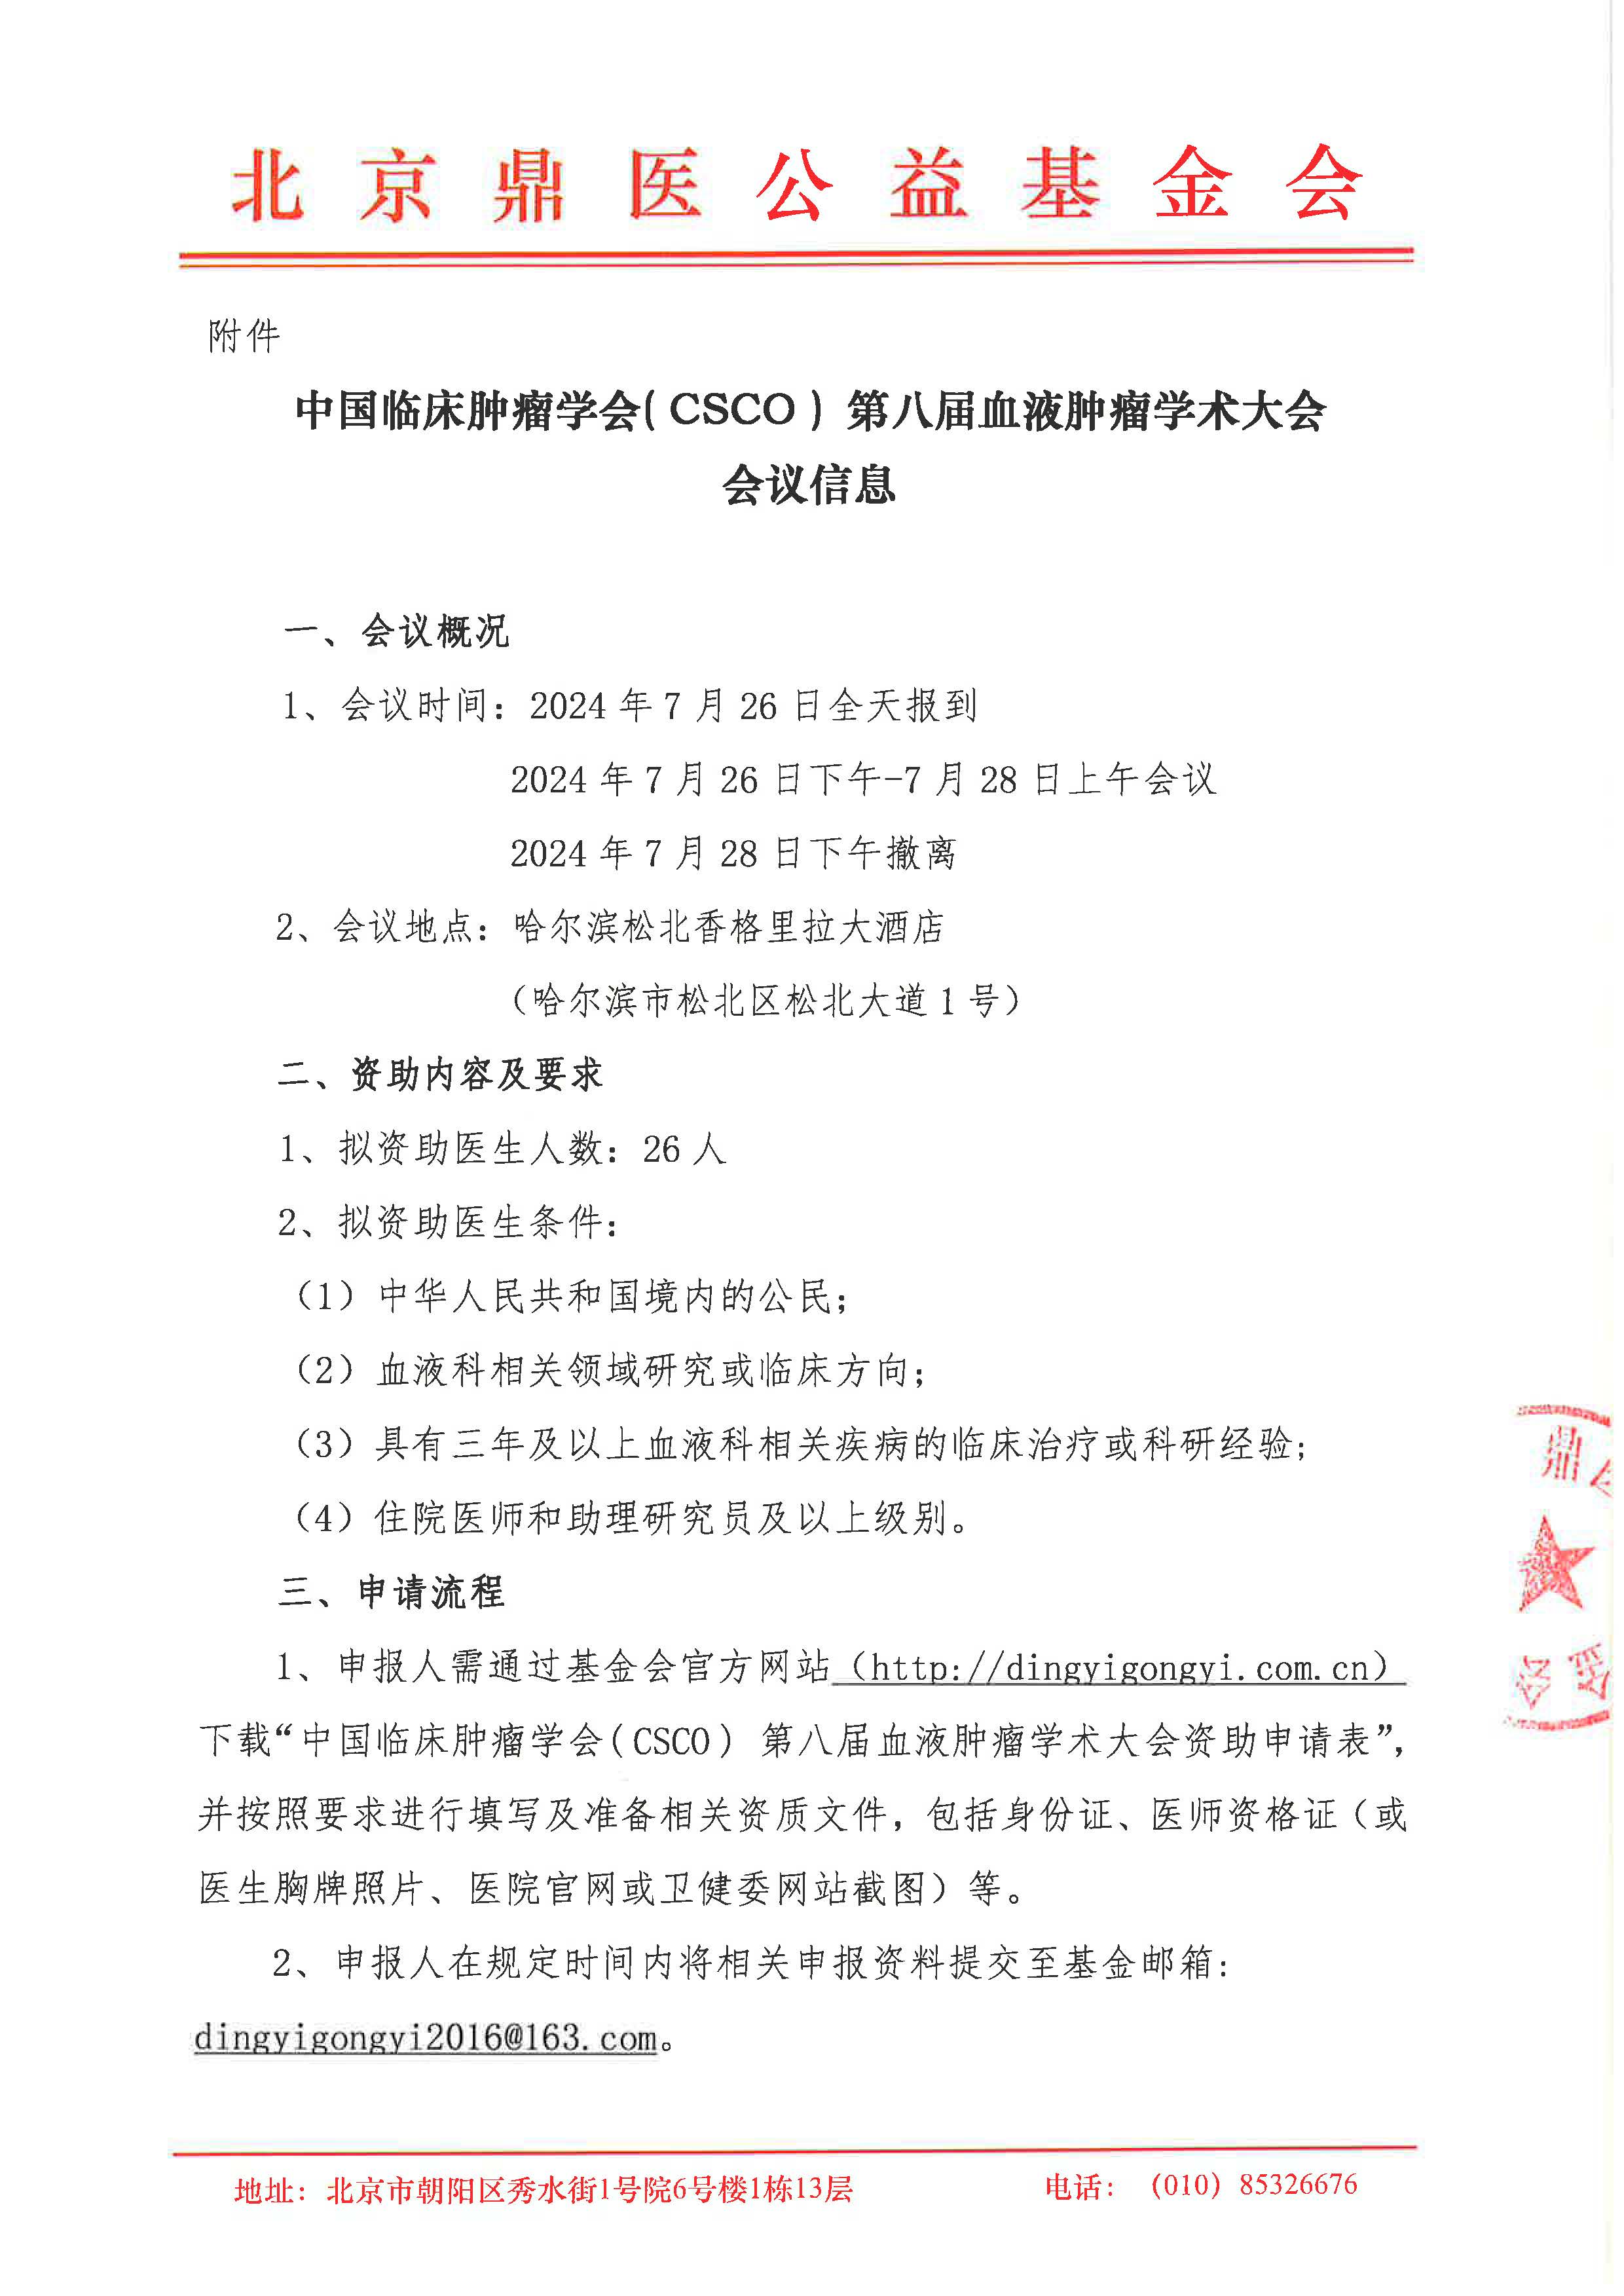 中国临床肿瘤学会( CSCO ) 第八届血液肿瘤学术大会-邀请函_页面_2.jpg